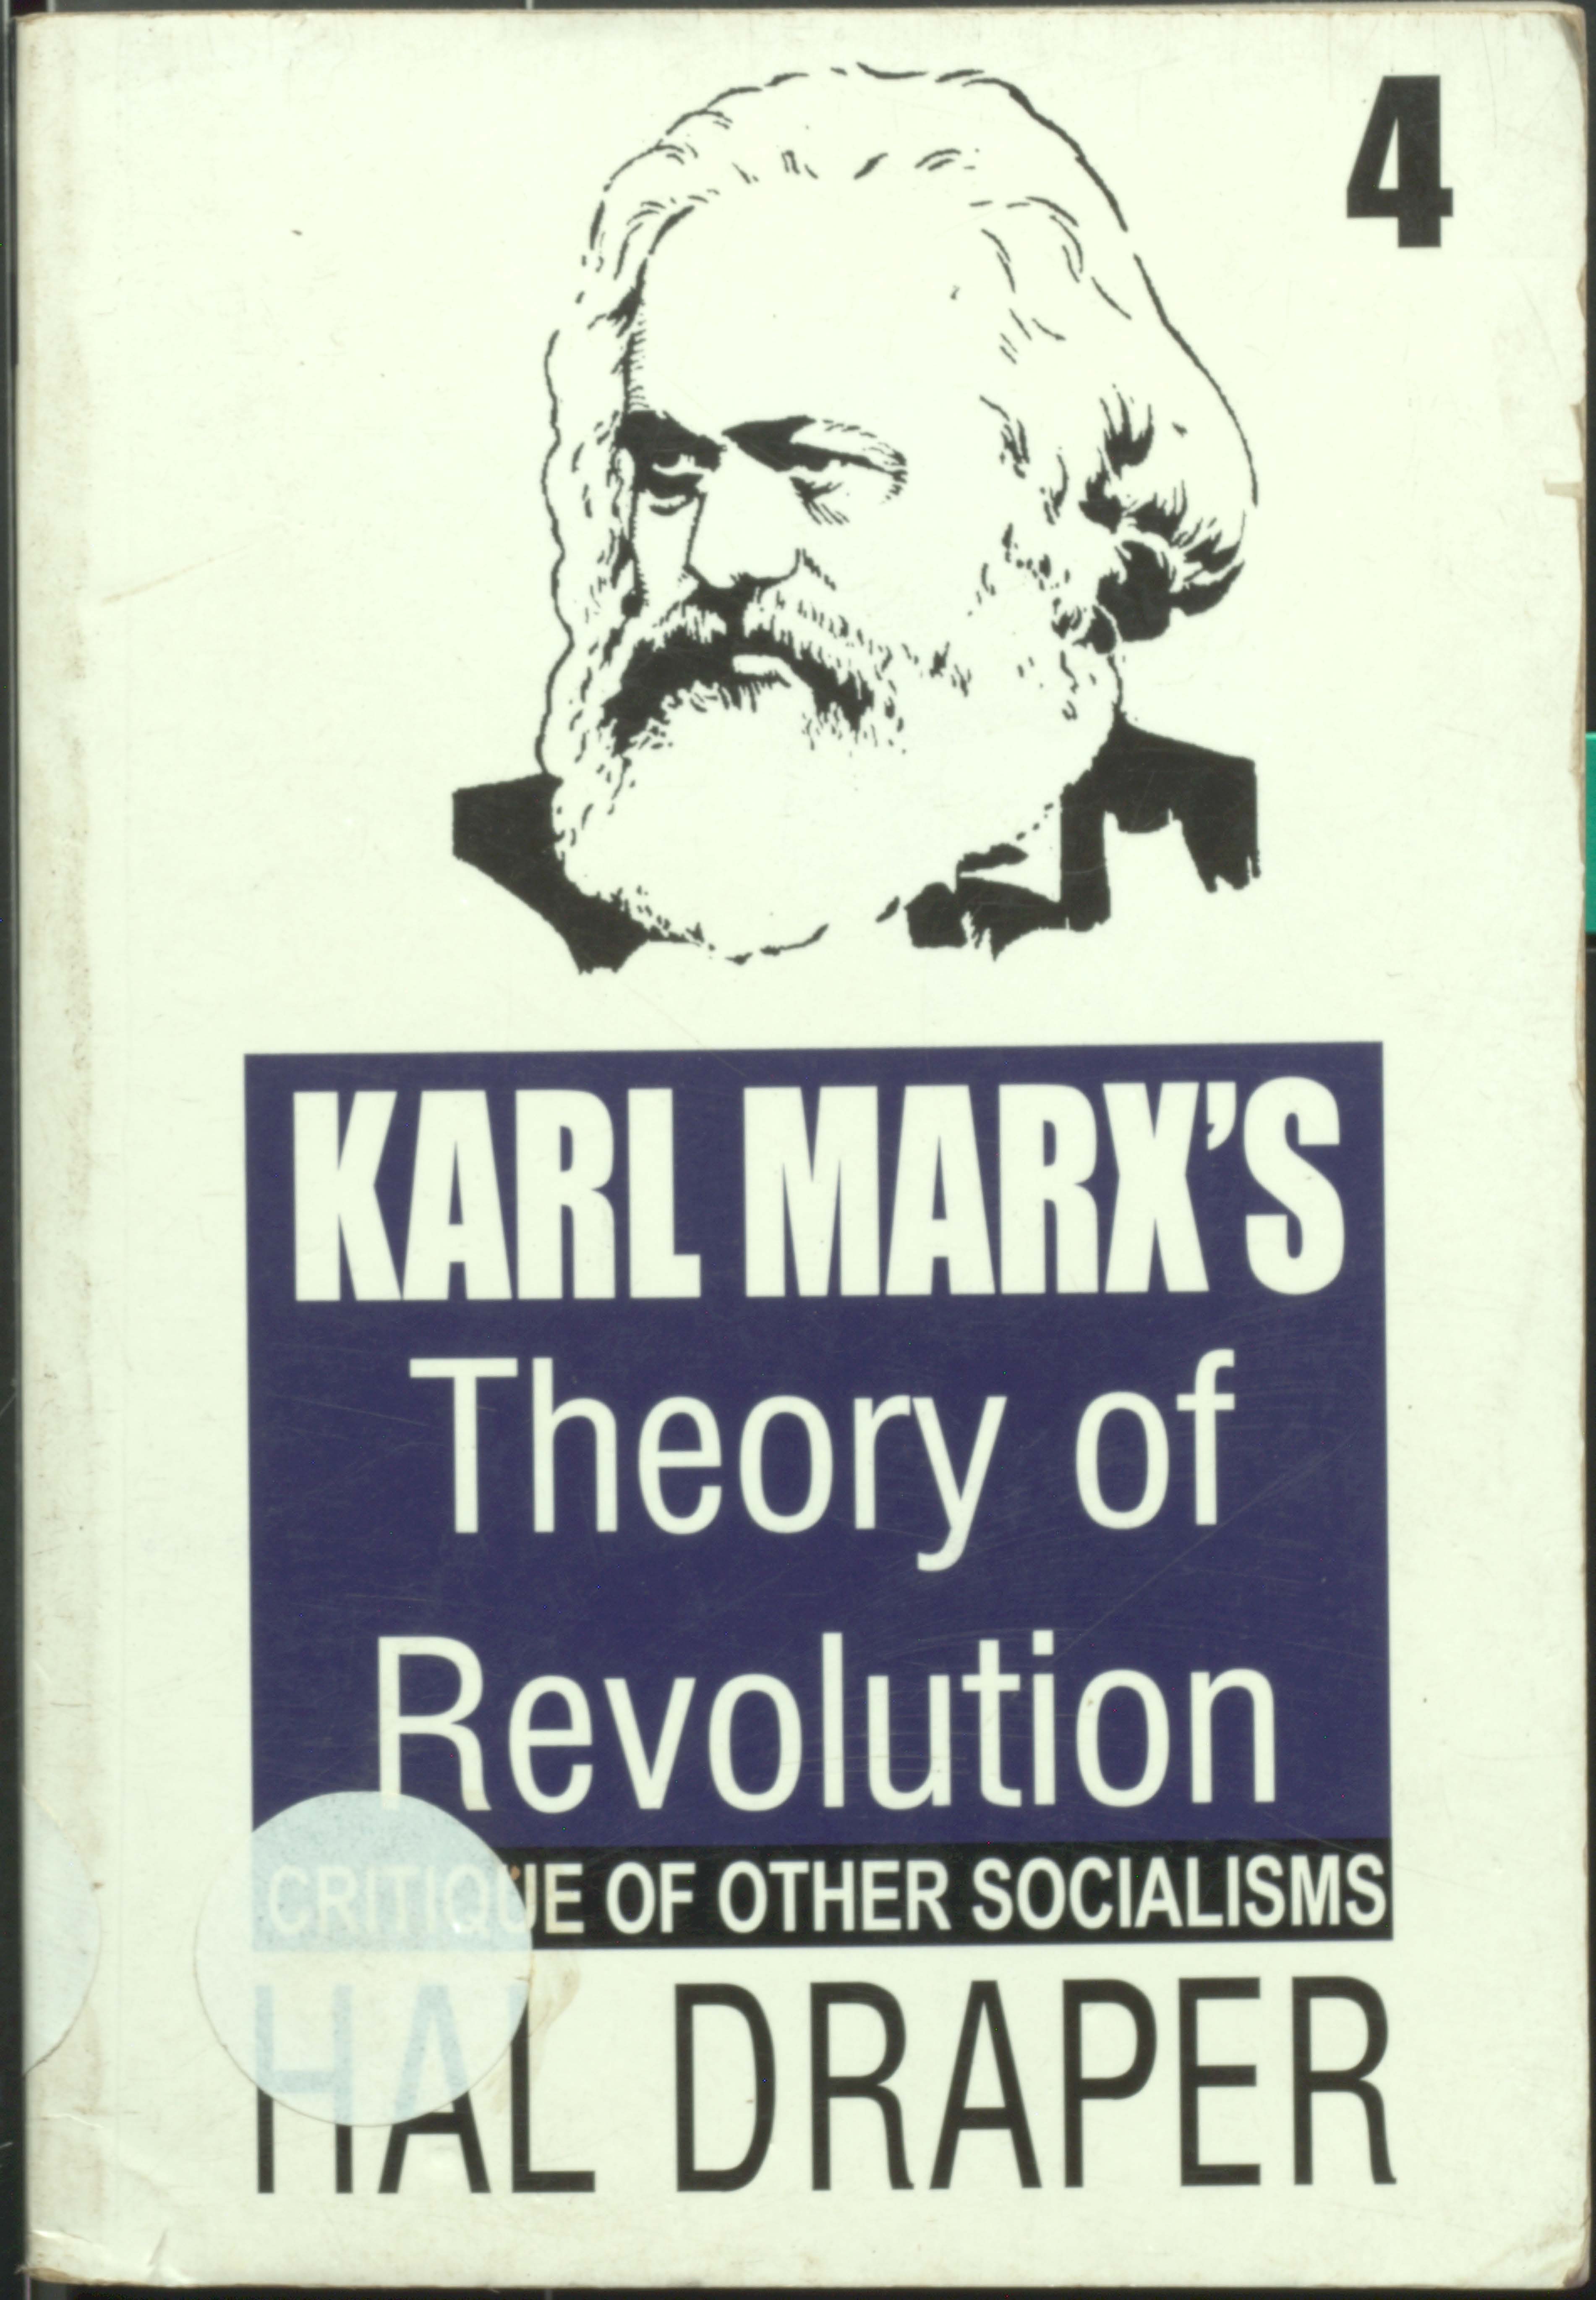 Karl marx's theory of revolution (volume-4)